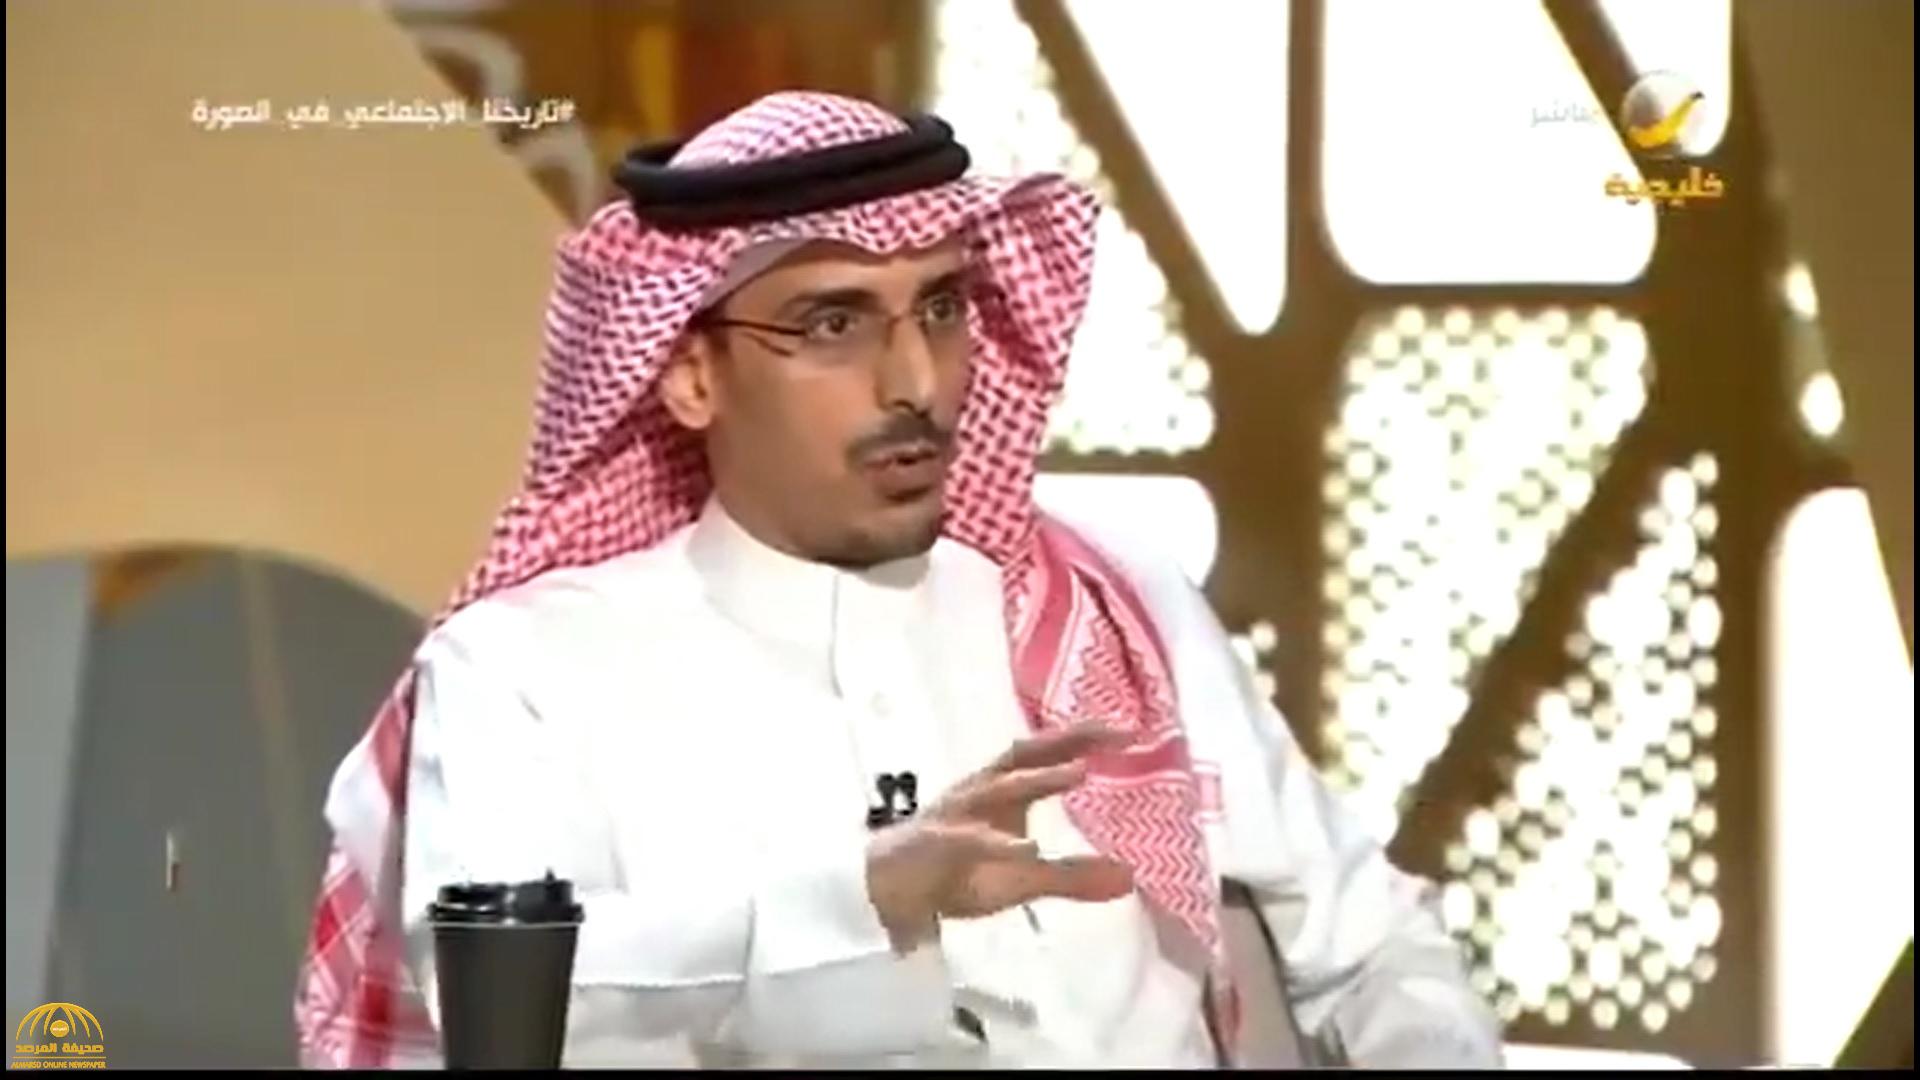 بالفيديو : باحث سعودي يروي قصة أغرب شائعة خرافية أثارت الرعب في السعودية ..وتاريخ ظهورها